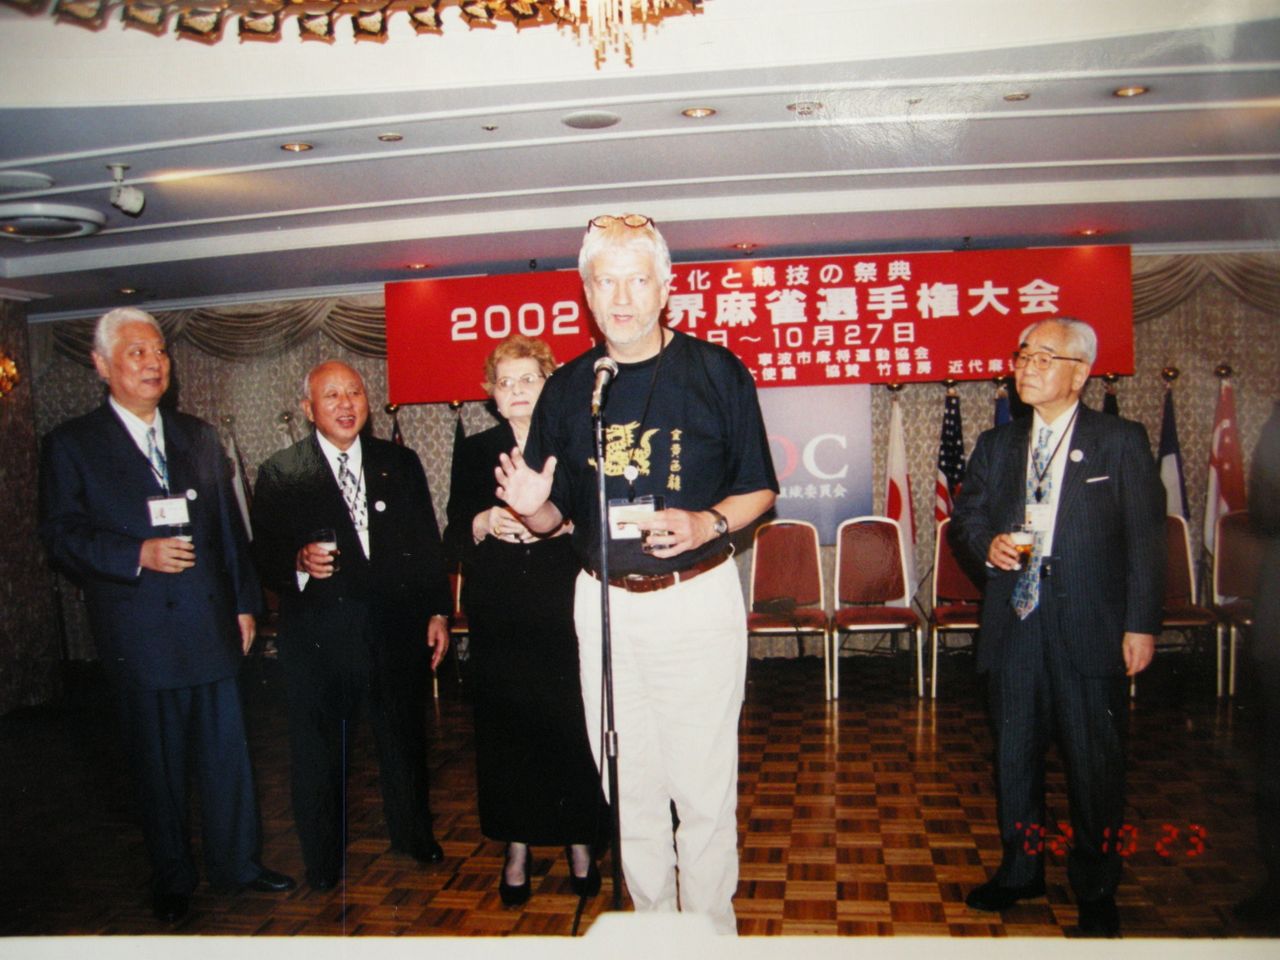 野口恭一郎在第一屆世界麻將錦標賽上2